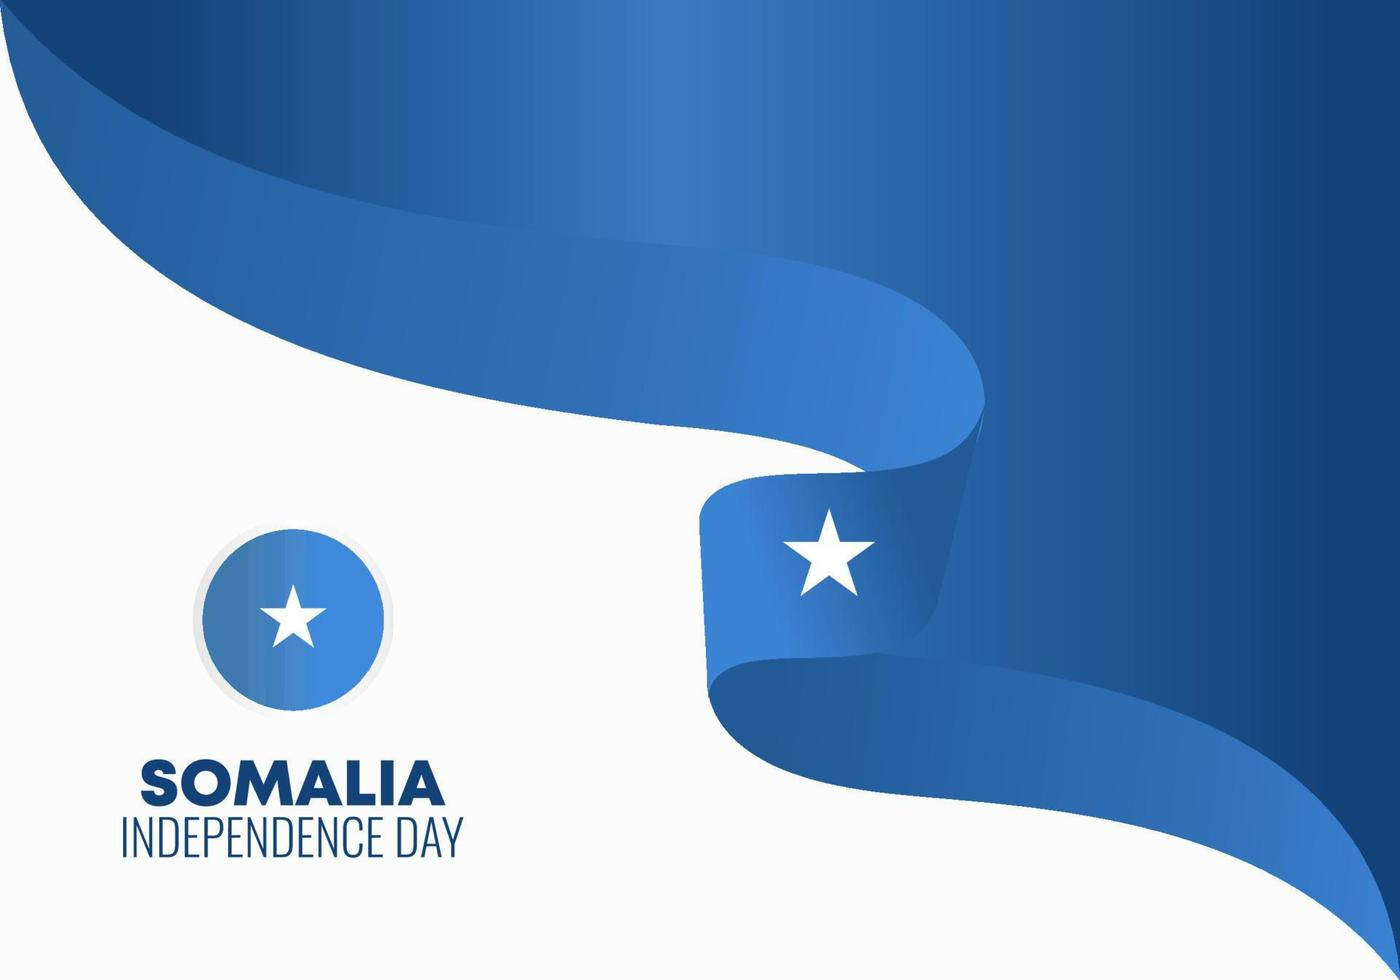 Somalia Independence Day Background